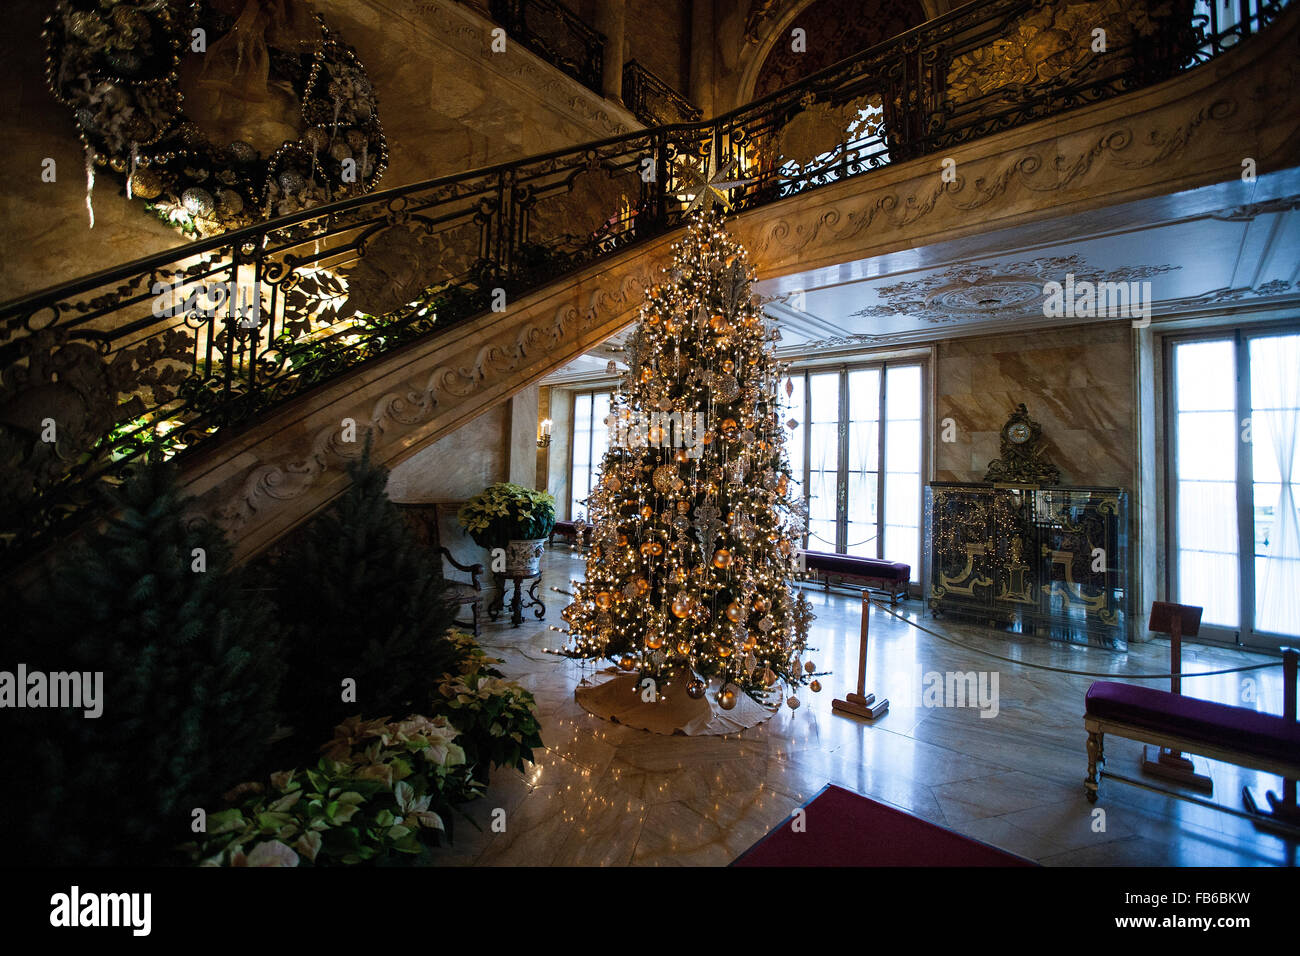 Albero di natale e la scalinata in marmo, House, Newport, Rhode Island, Stati Uniti d'America Foto Stock